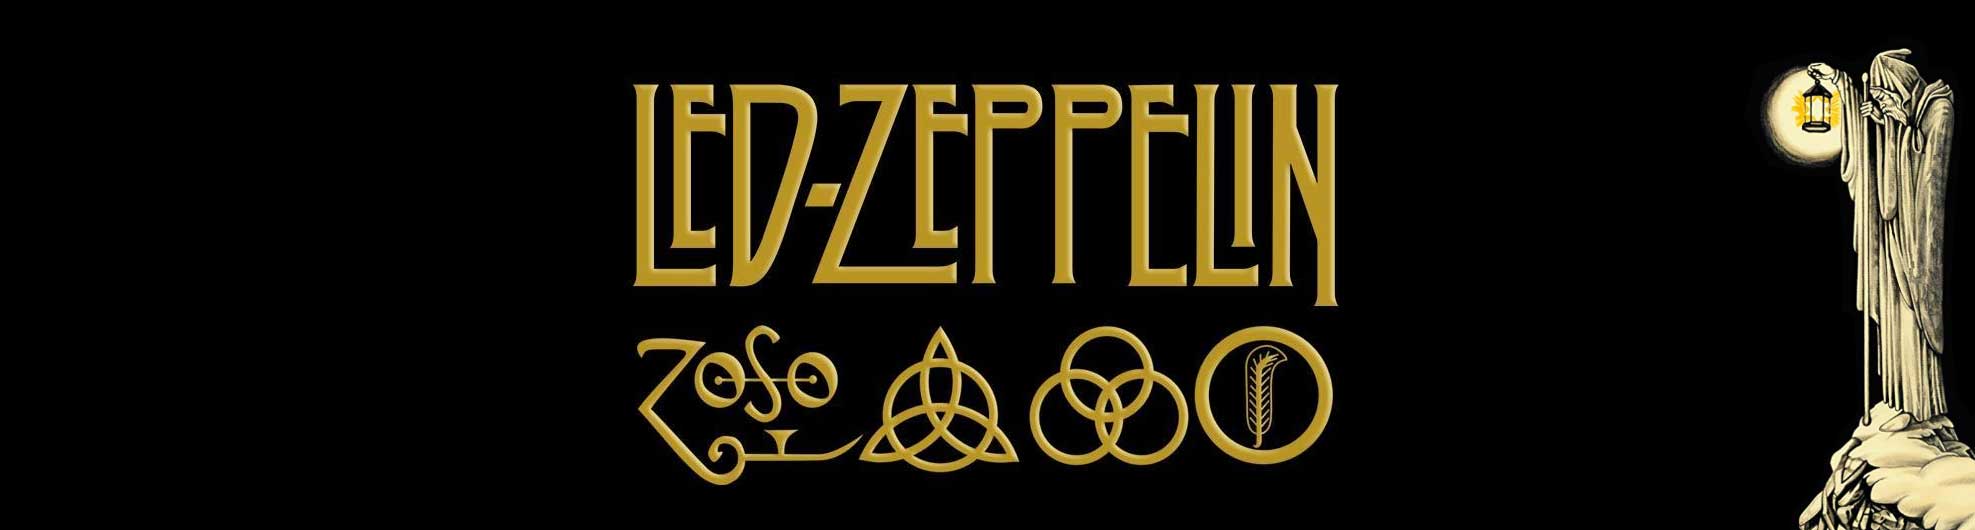 Led Zeppelin Official Licensed Merchandise new for 2019